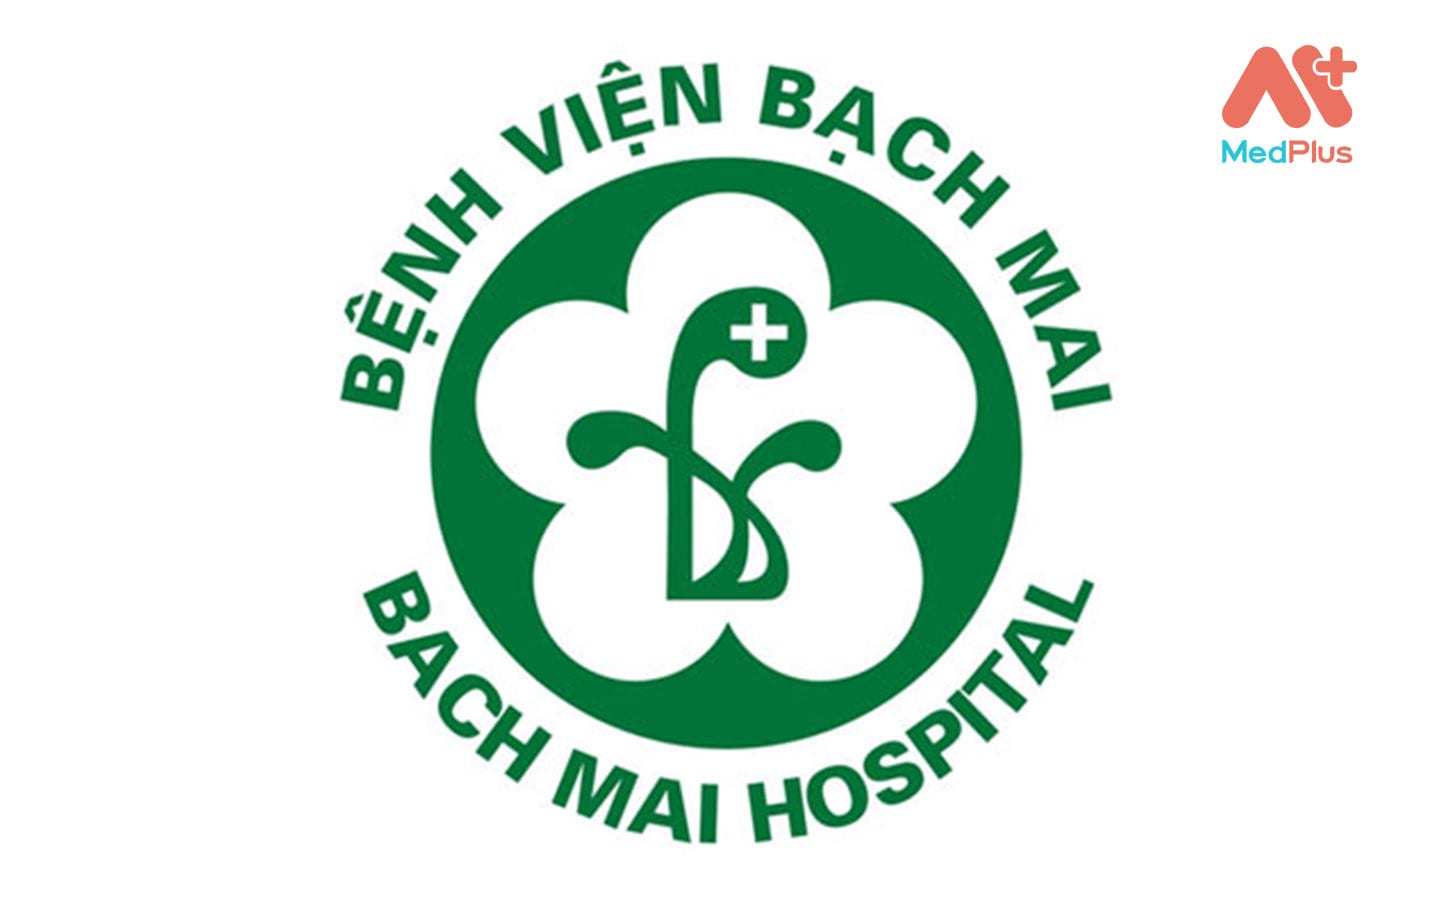 Bệnh viện Bạch Mai - Bệnh viện nội soi dạ dày uy tín tại Hà Nội